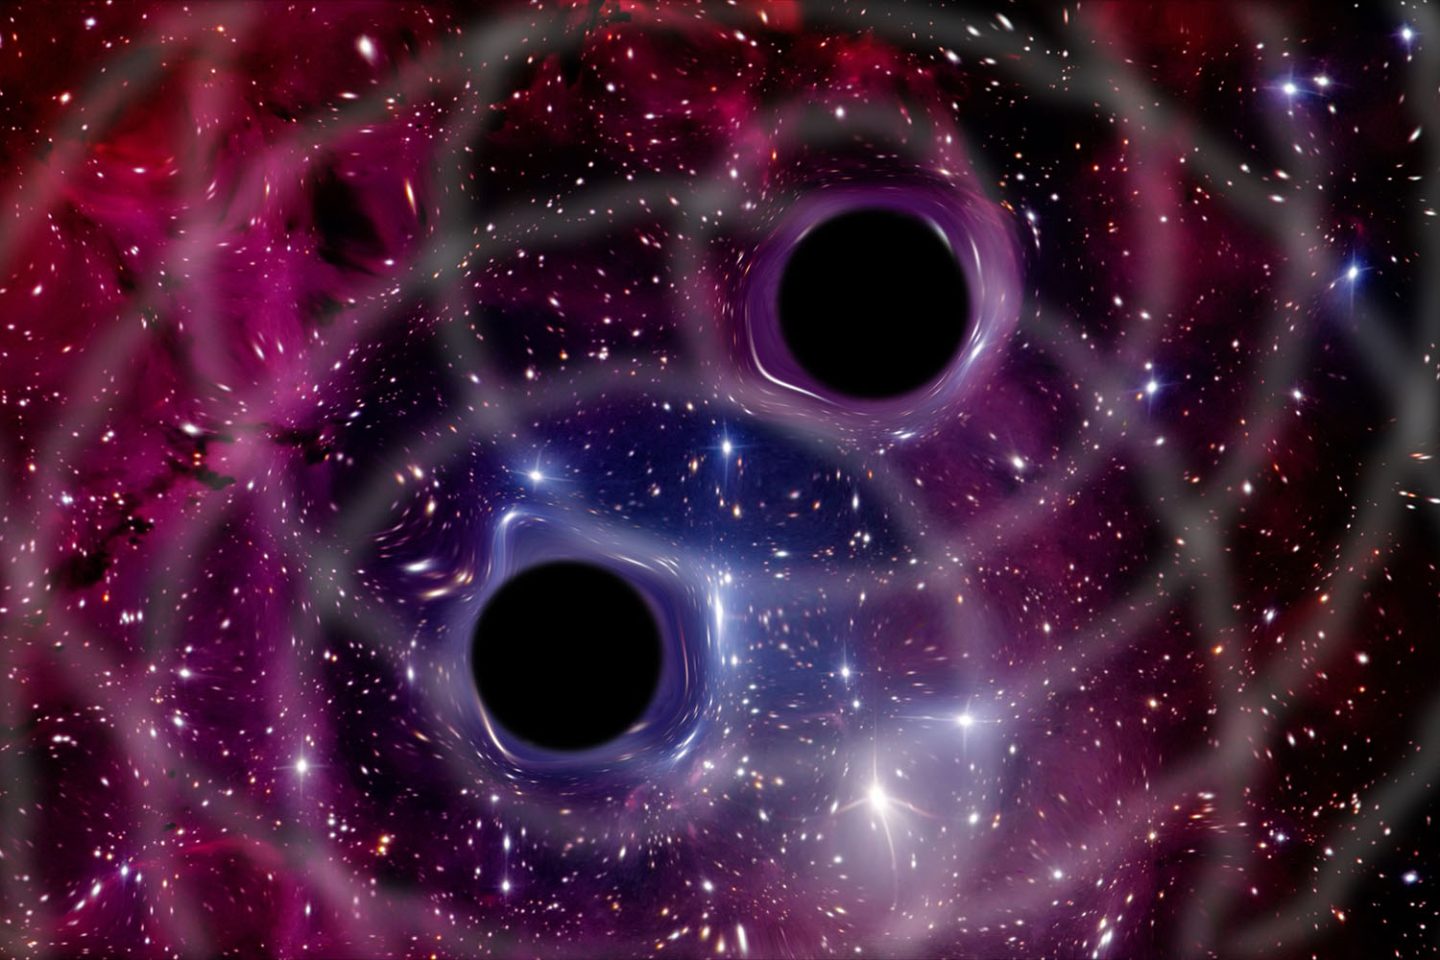 كيف تعكس الثقوب السوداء كوننا؟ علماء يحولون الثقوب السوداء إلى معادلات رياضية لفهمها